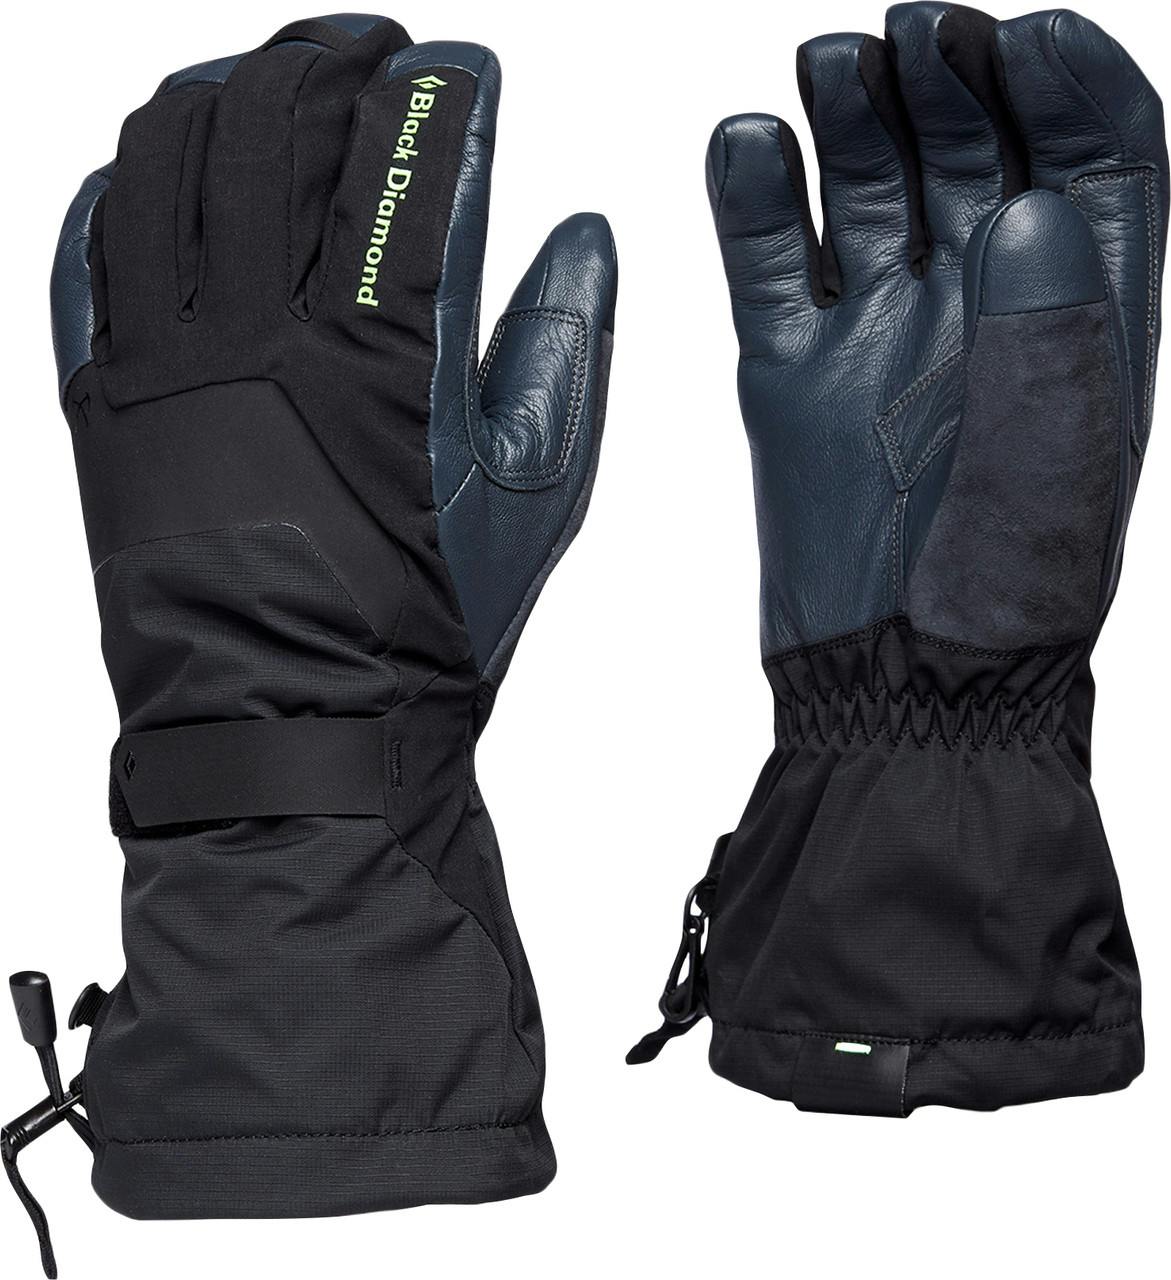 Enforcer Gloves Black